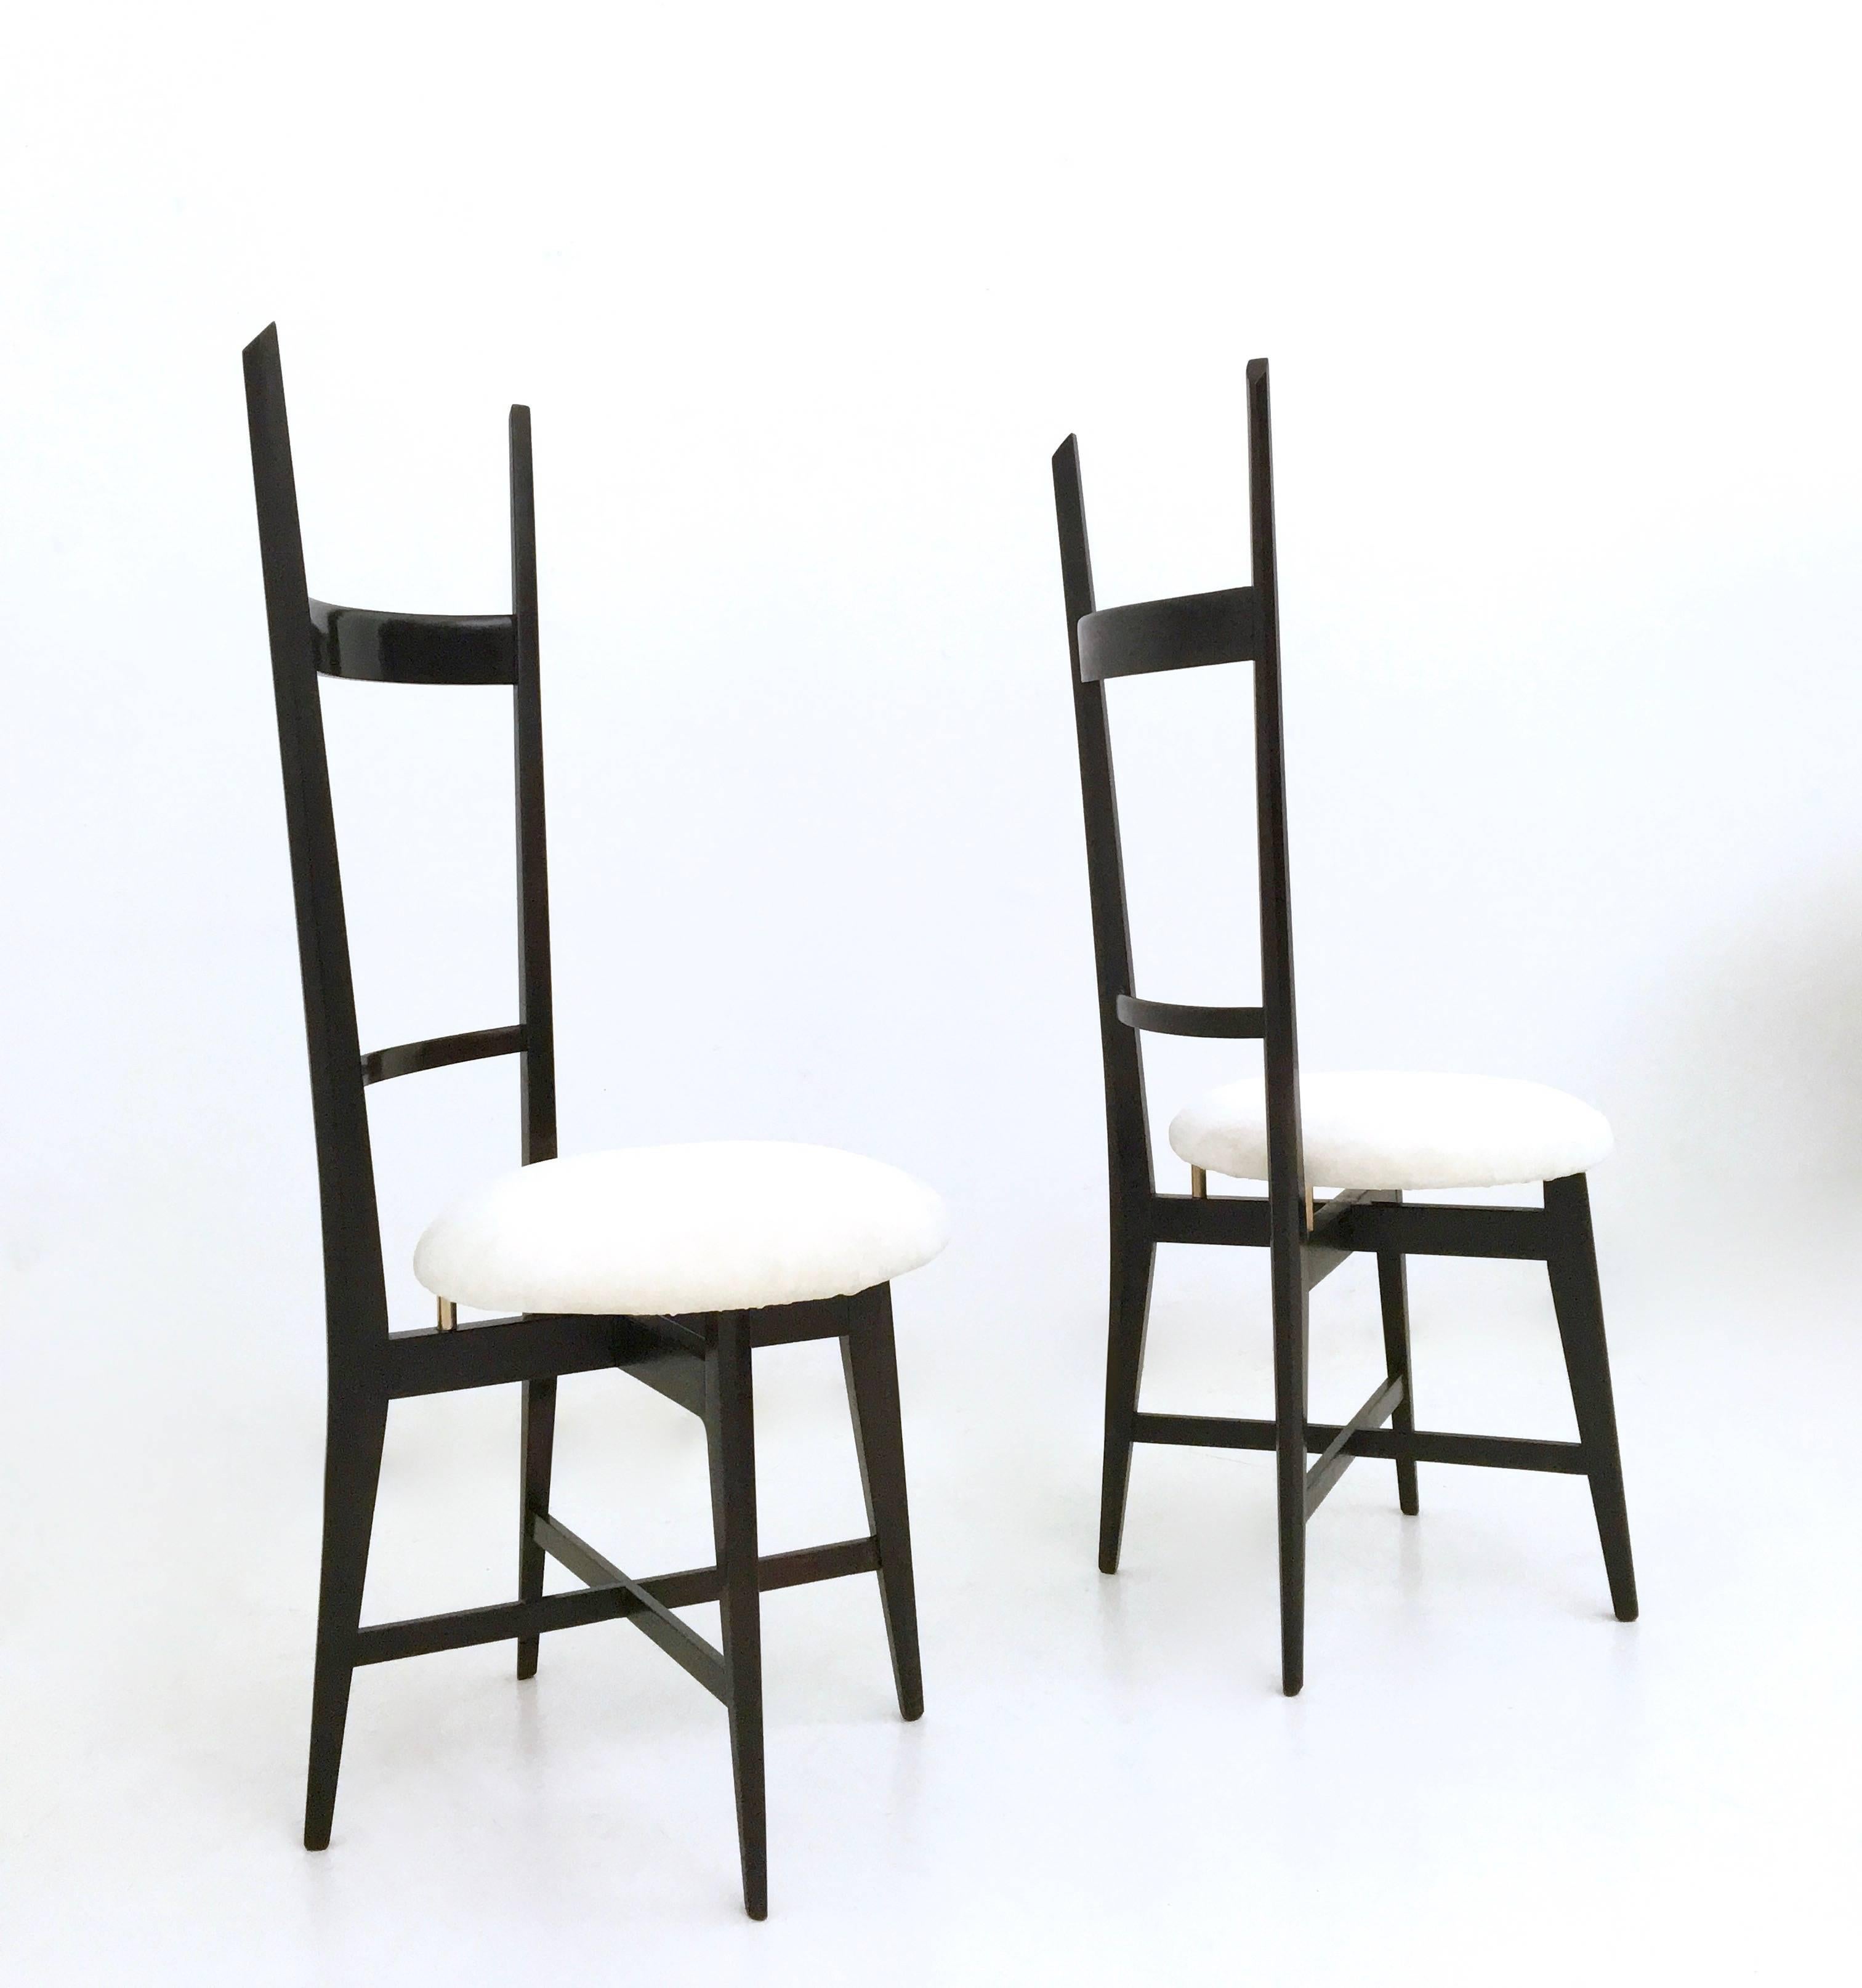 Fabriqué en Italie, années 1950.
Ces chaises présentent un cadre en hêtre massif ébonisé, des détails en laiton et un revêtement en velours blanc.
Ils sont d'époque et peuvent donc présenter de légères traces d'utilisation, mais comme ils ont été